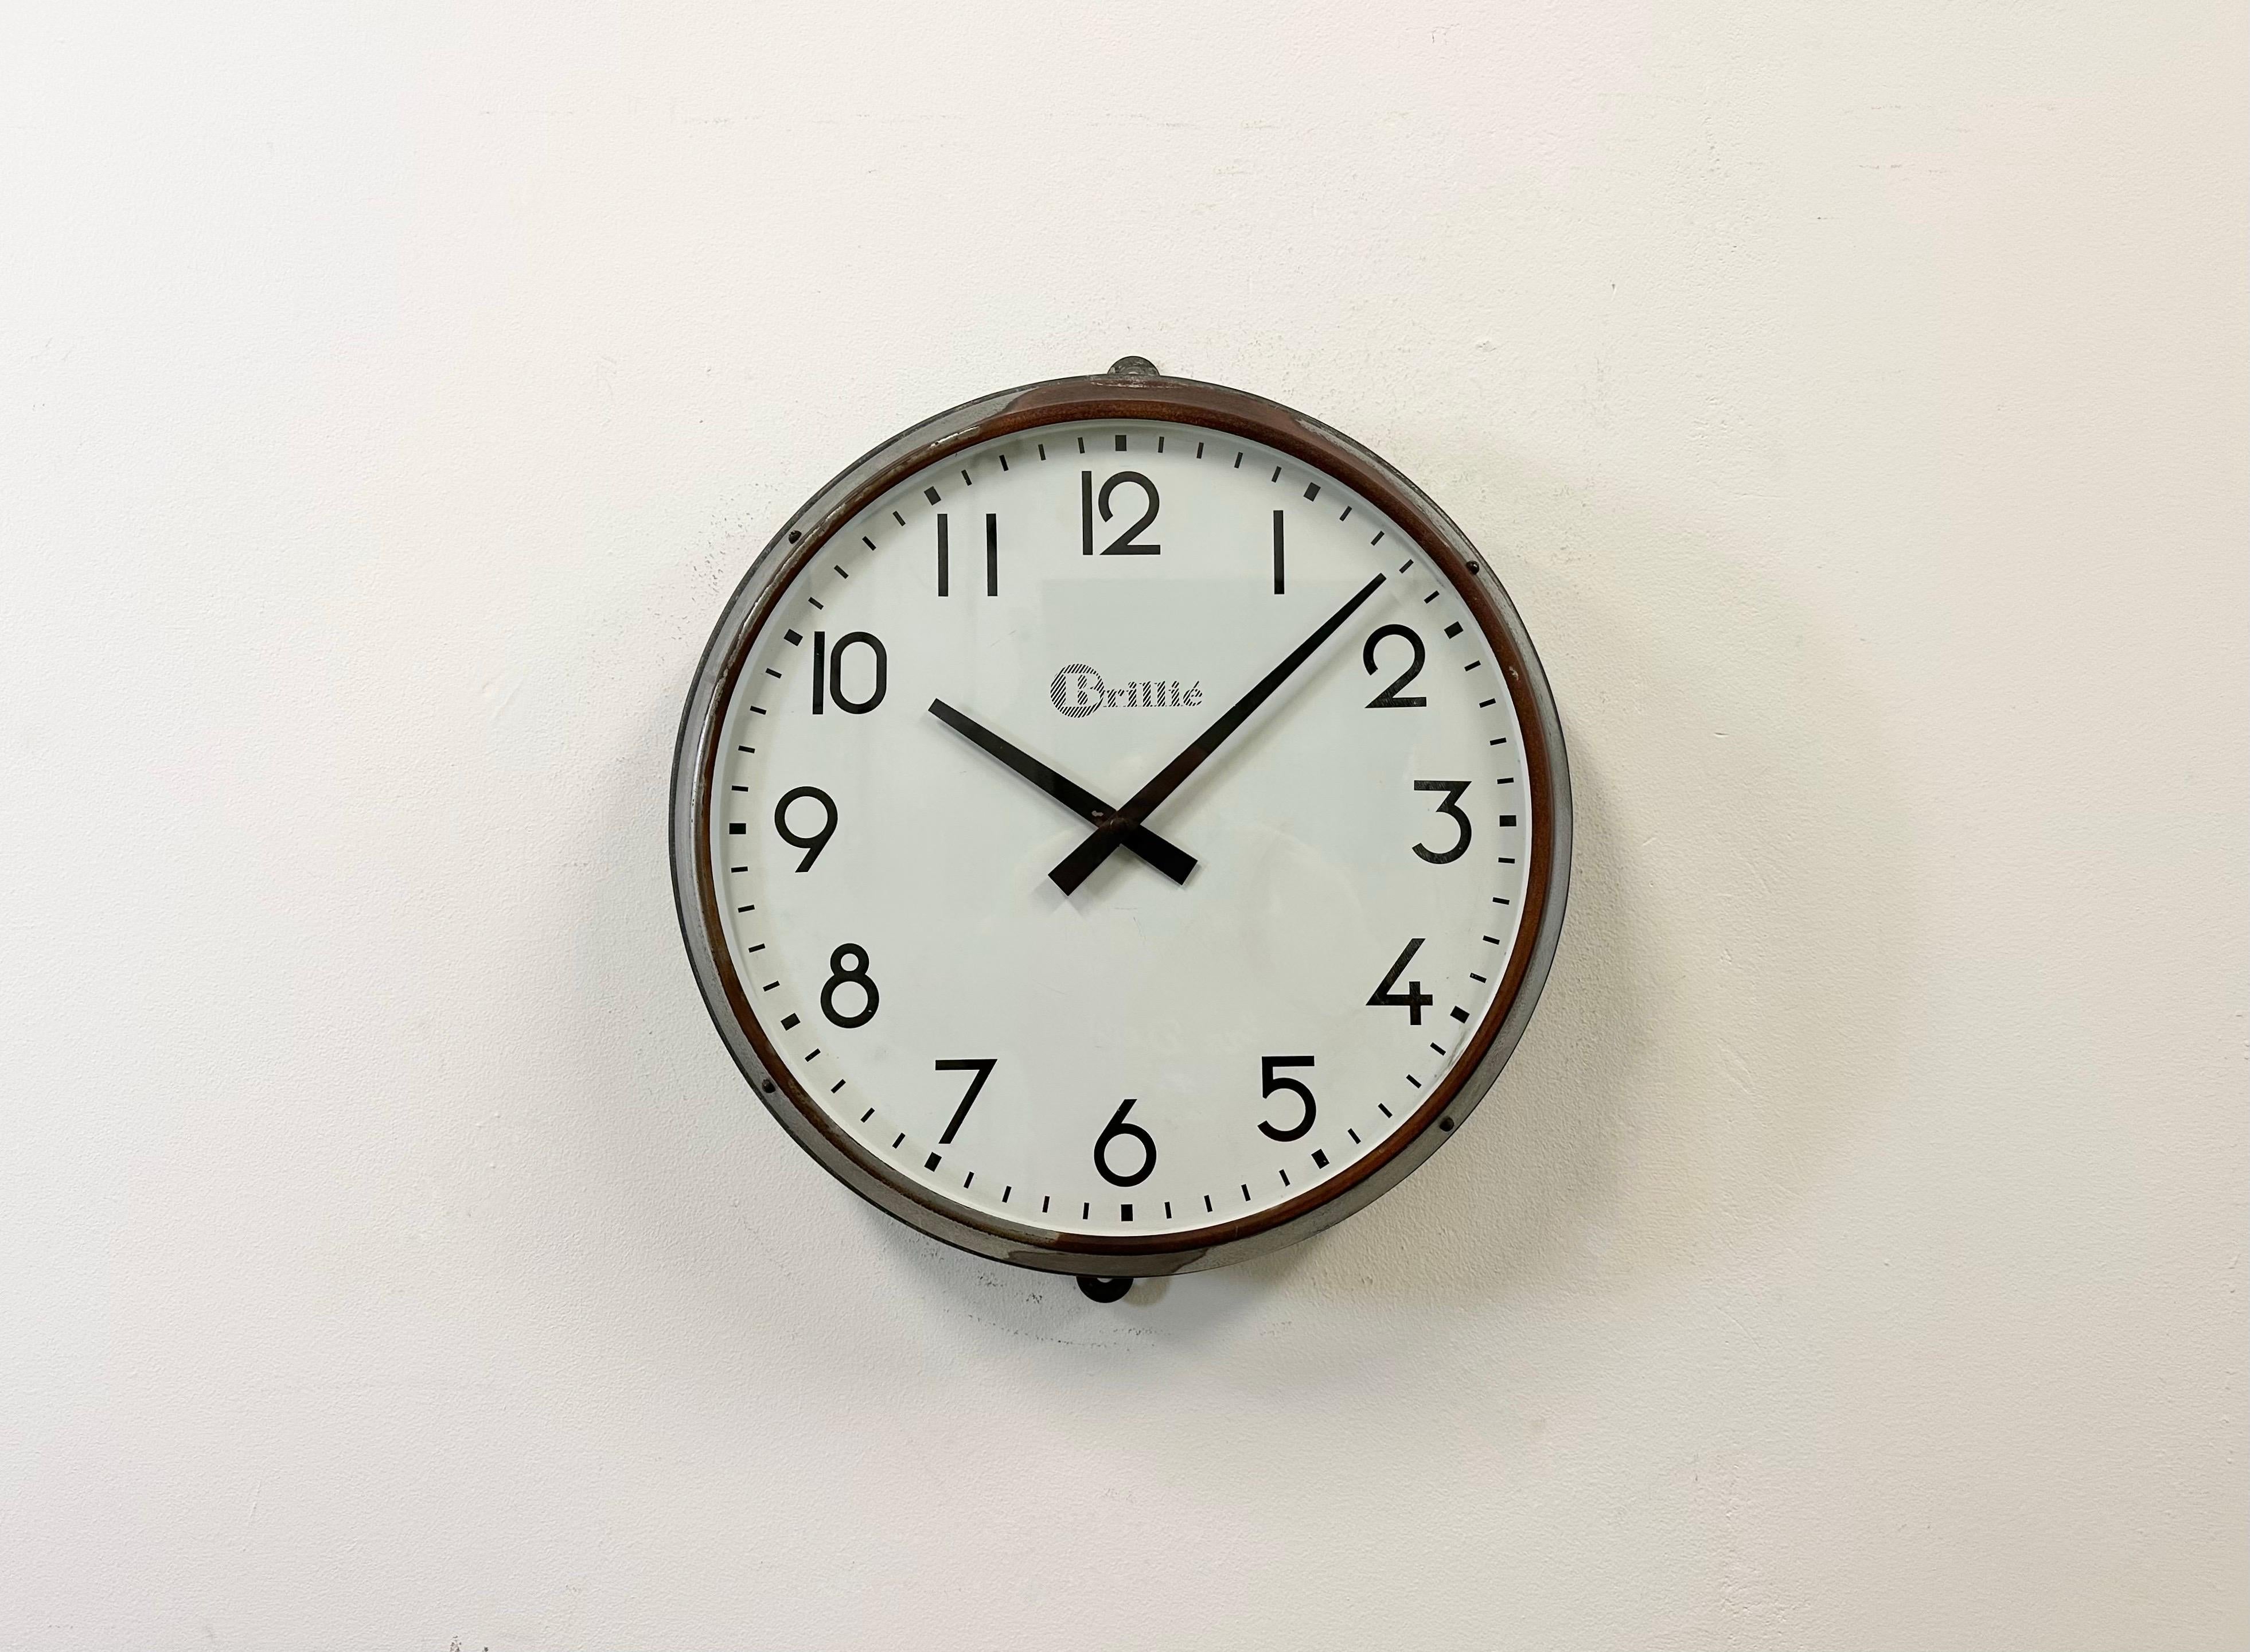 Cette horloge murale a été produite par Brillié en France dans les années 1950. Elle présente un boîtier en métal gris, un cadran en fer et un couvercle en verre transparent. La pièce a été convertie en un mécanisme d'horlogerie alimenté par une